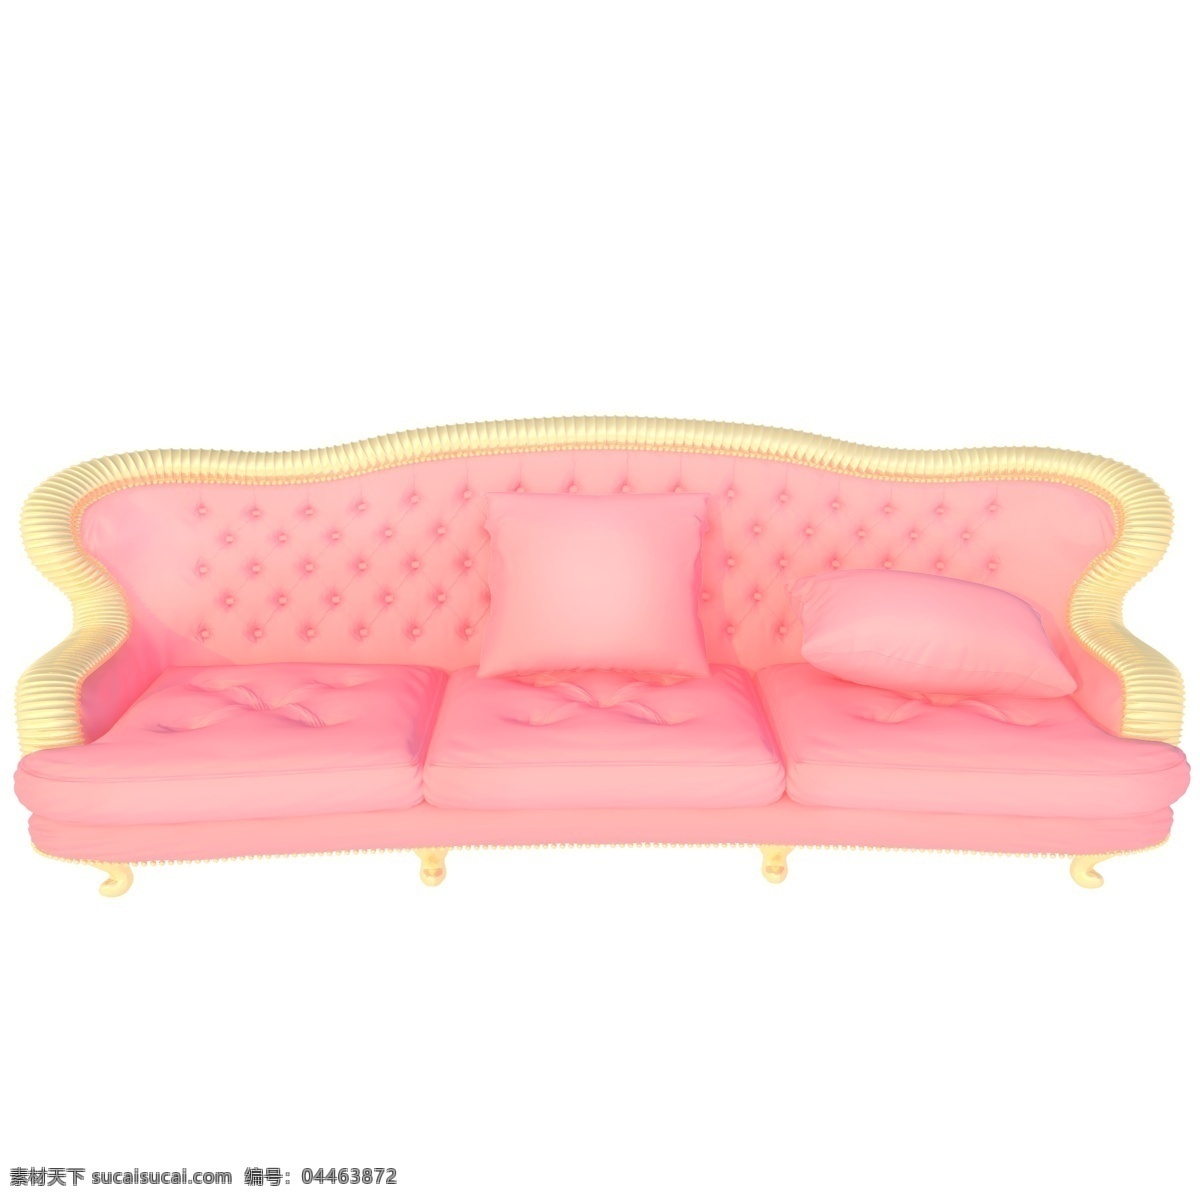 粉 黄色 沙发 插图 粉黄色插图 暖色 立体